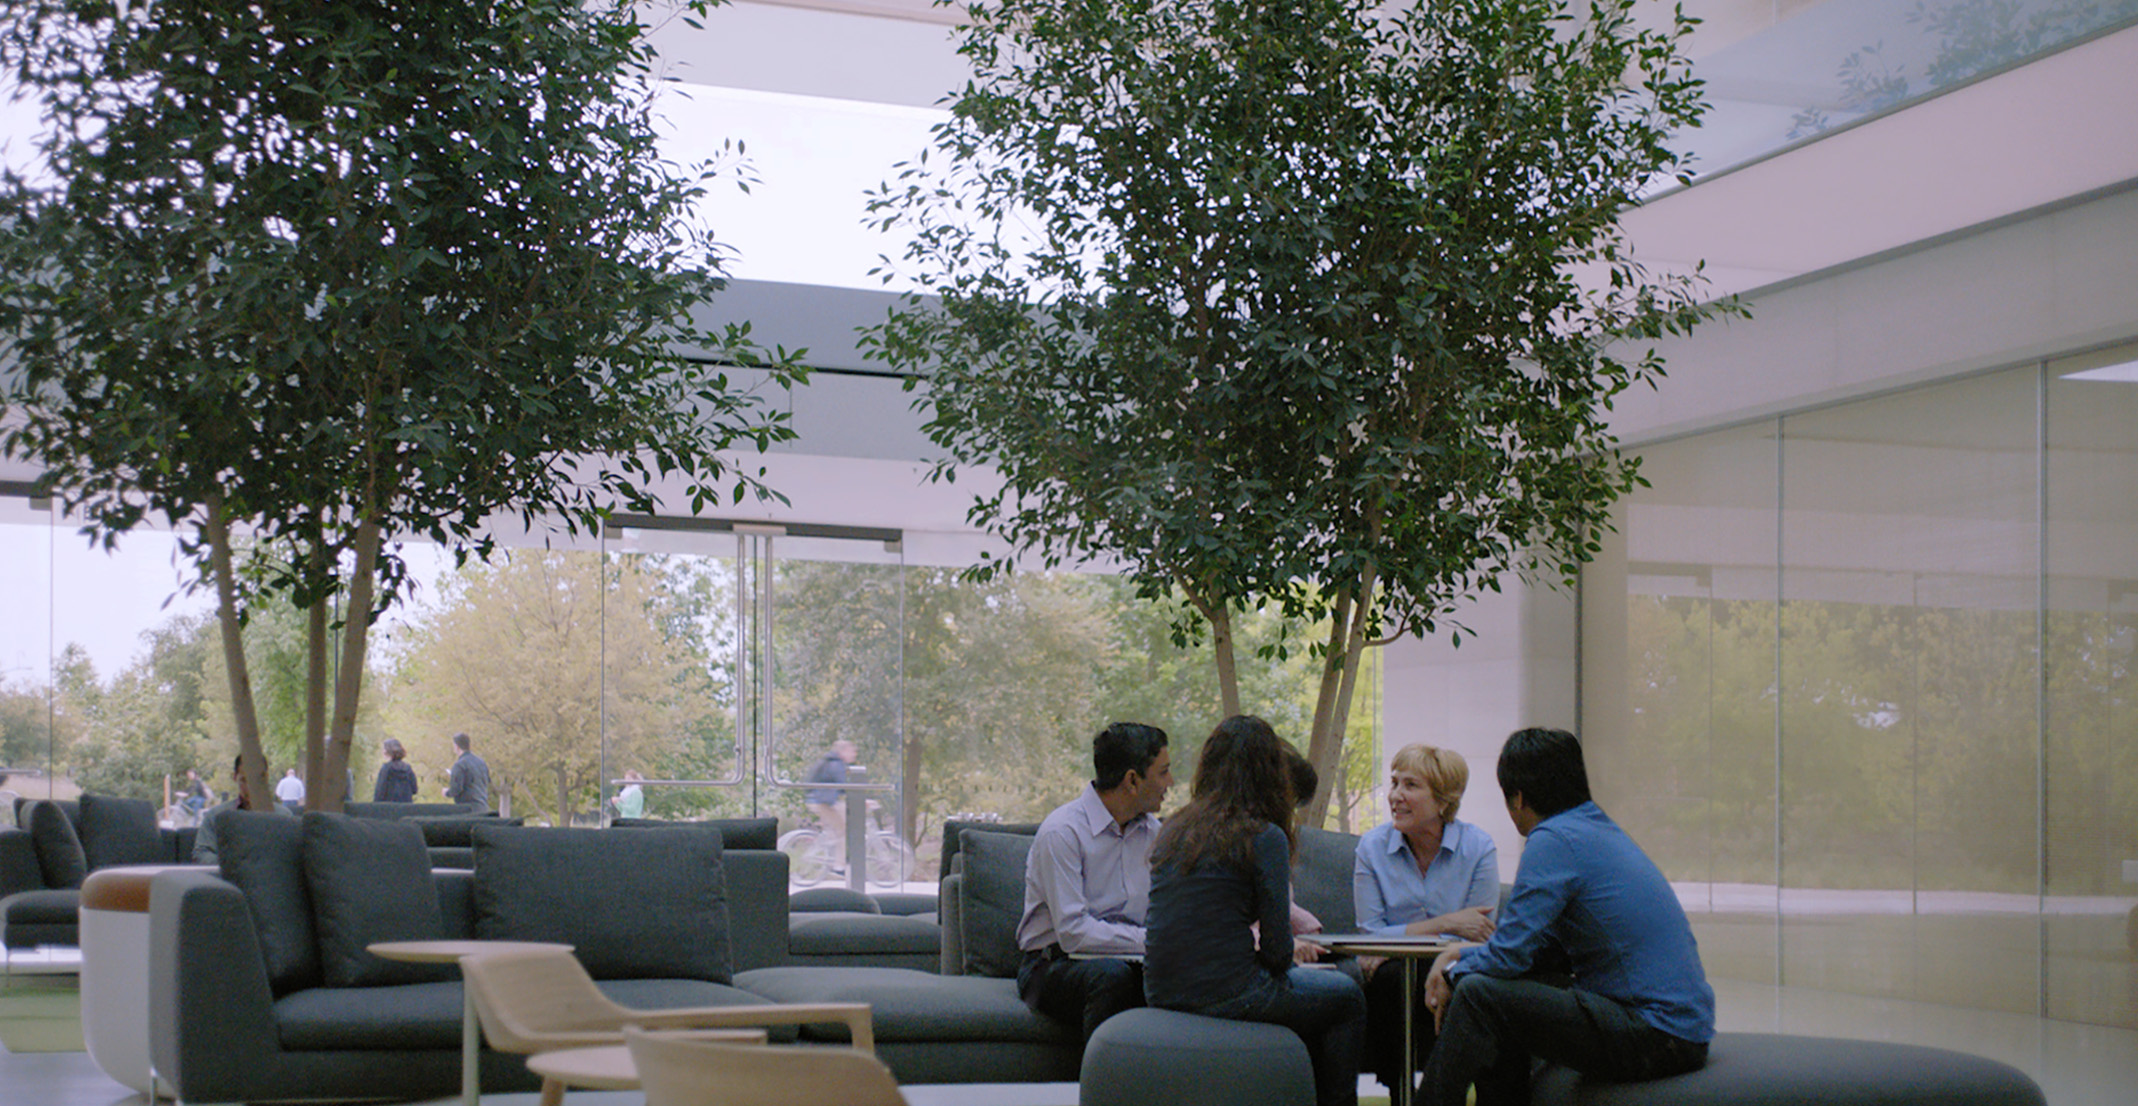 Luonnollisten kielien käsittelytiimiä johtava Giulia istuu pöydän äärellä muiden Applen työntekijöiden kanssa.